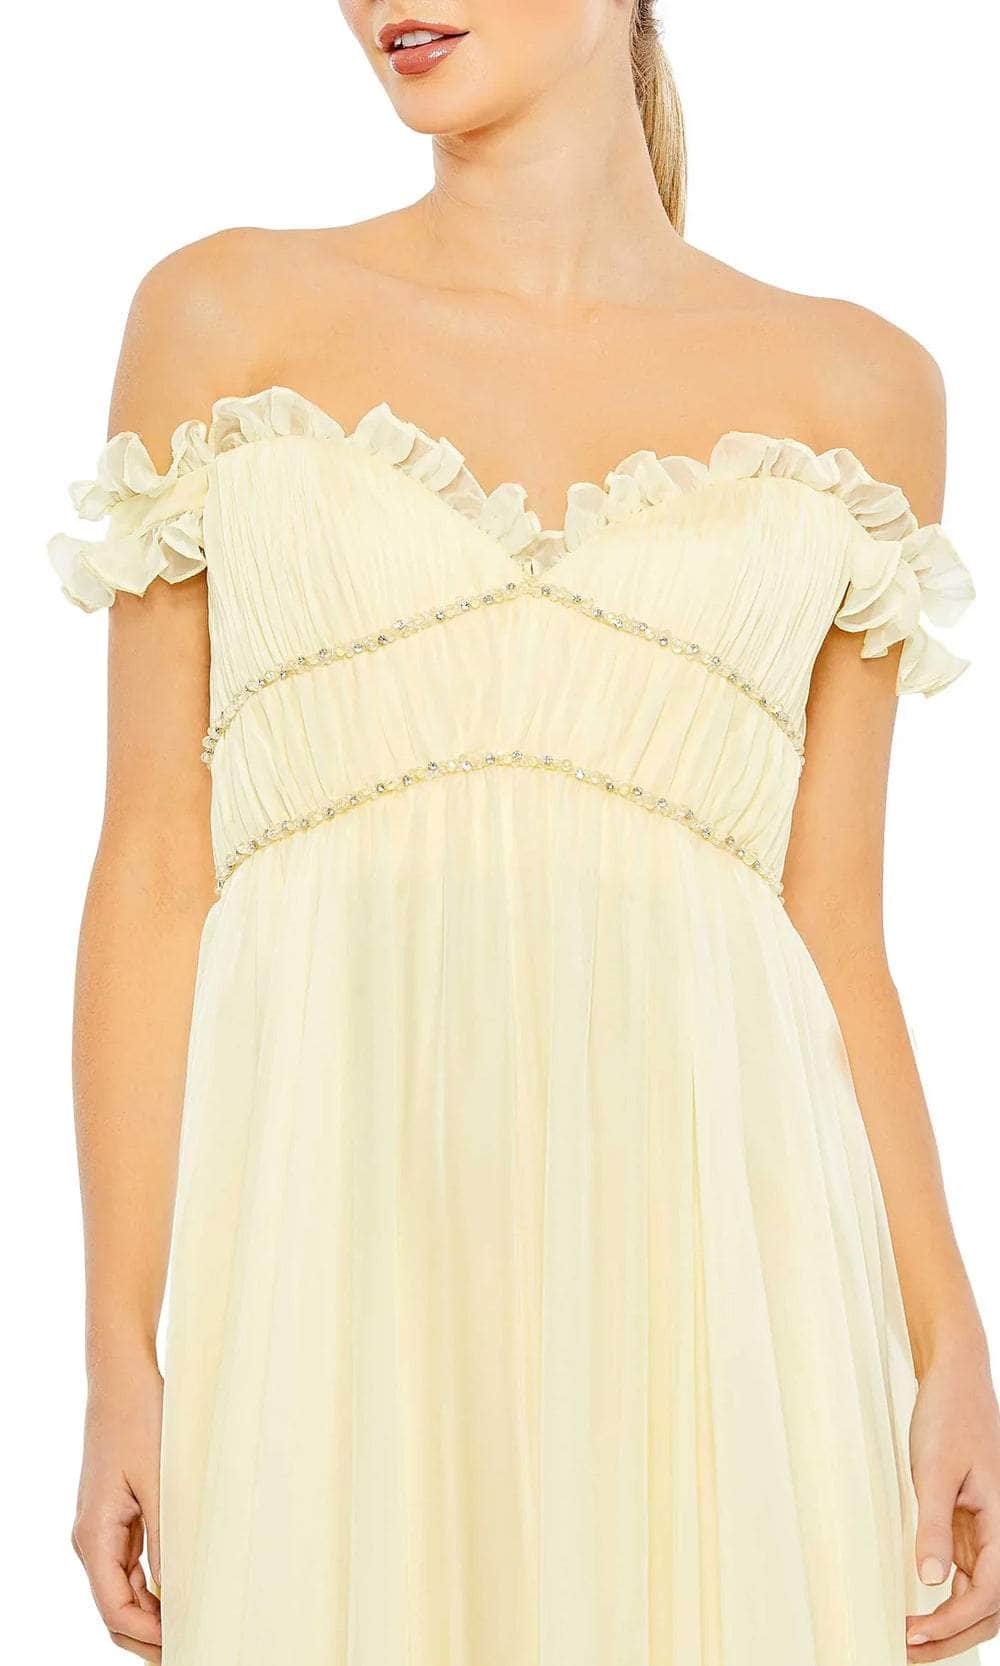 Mac Duggal 68086 - Off Shoulder Ruffled A-Line Prom Dress Prom Dresses